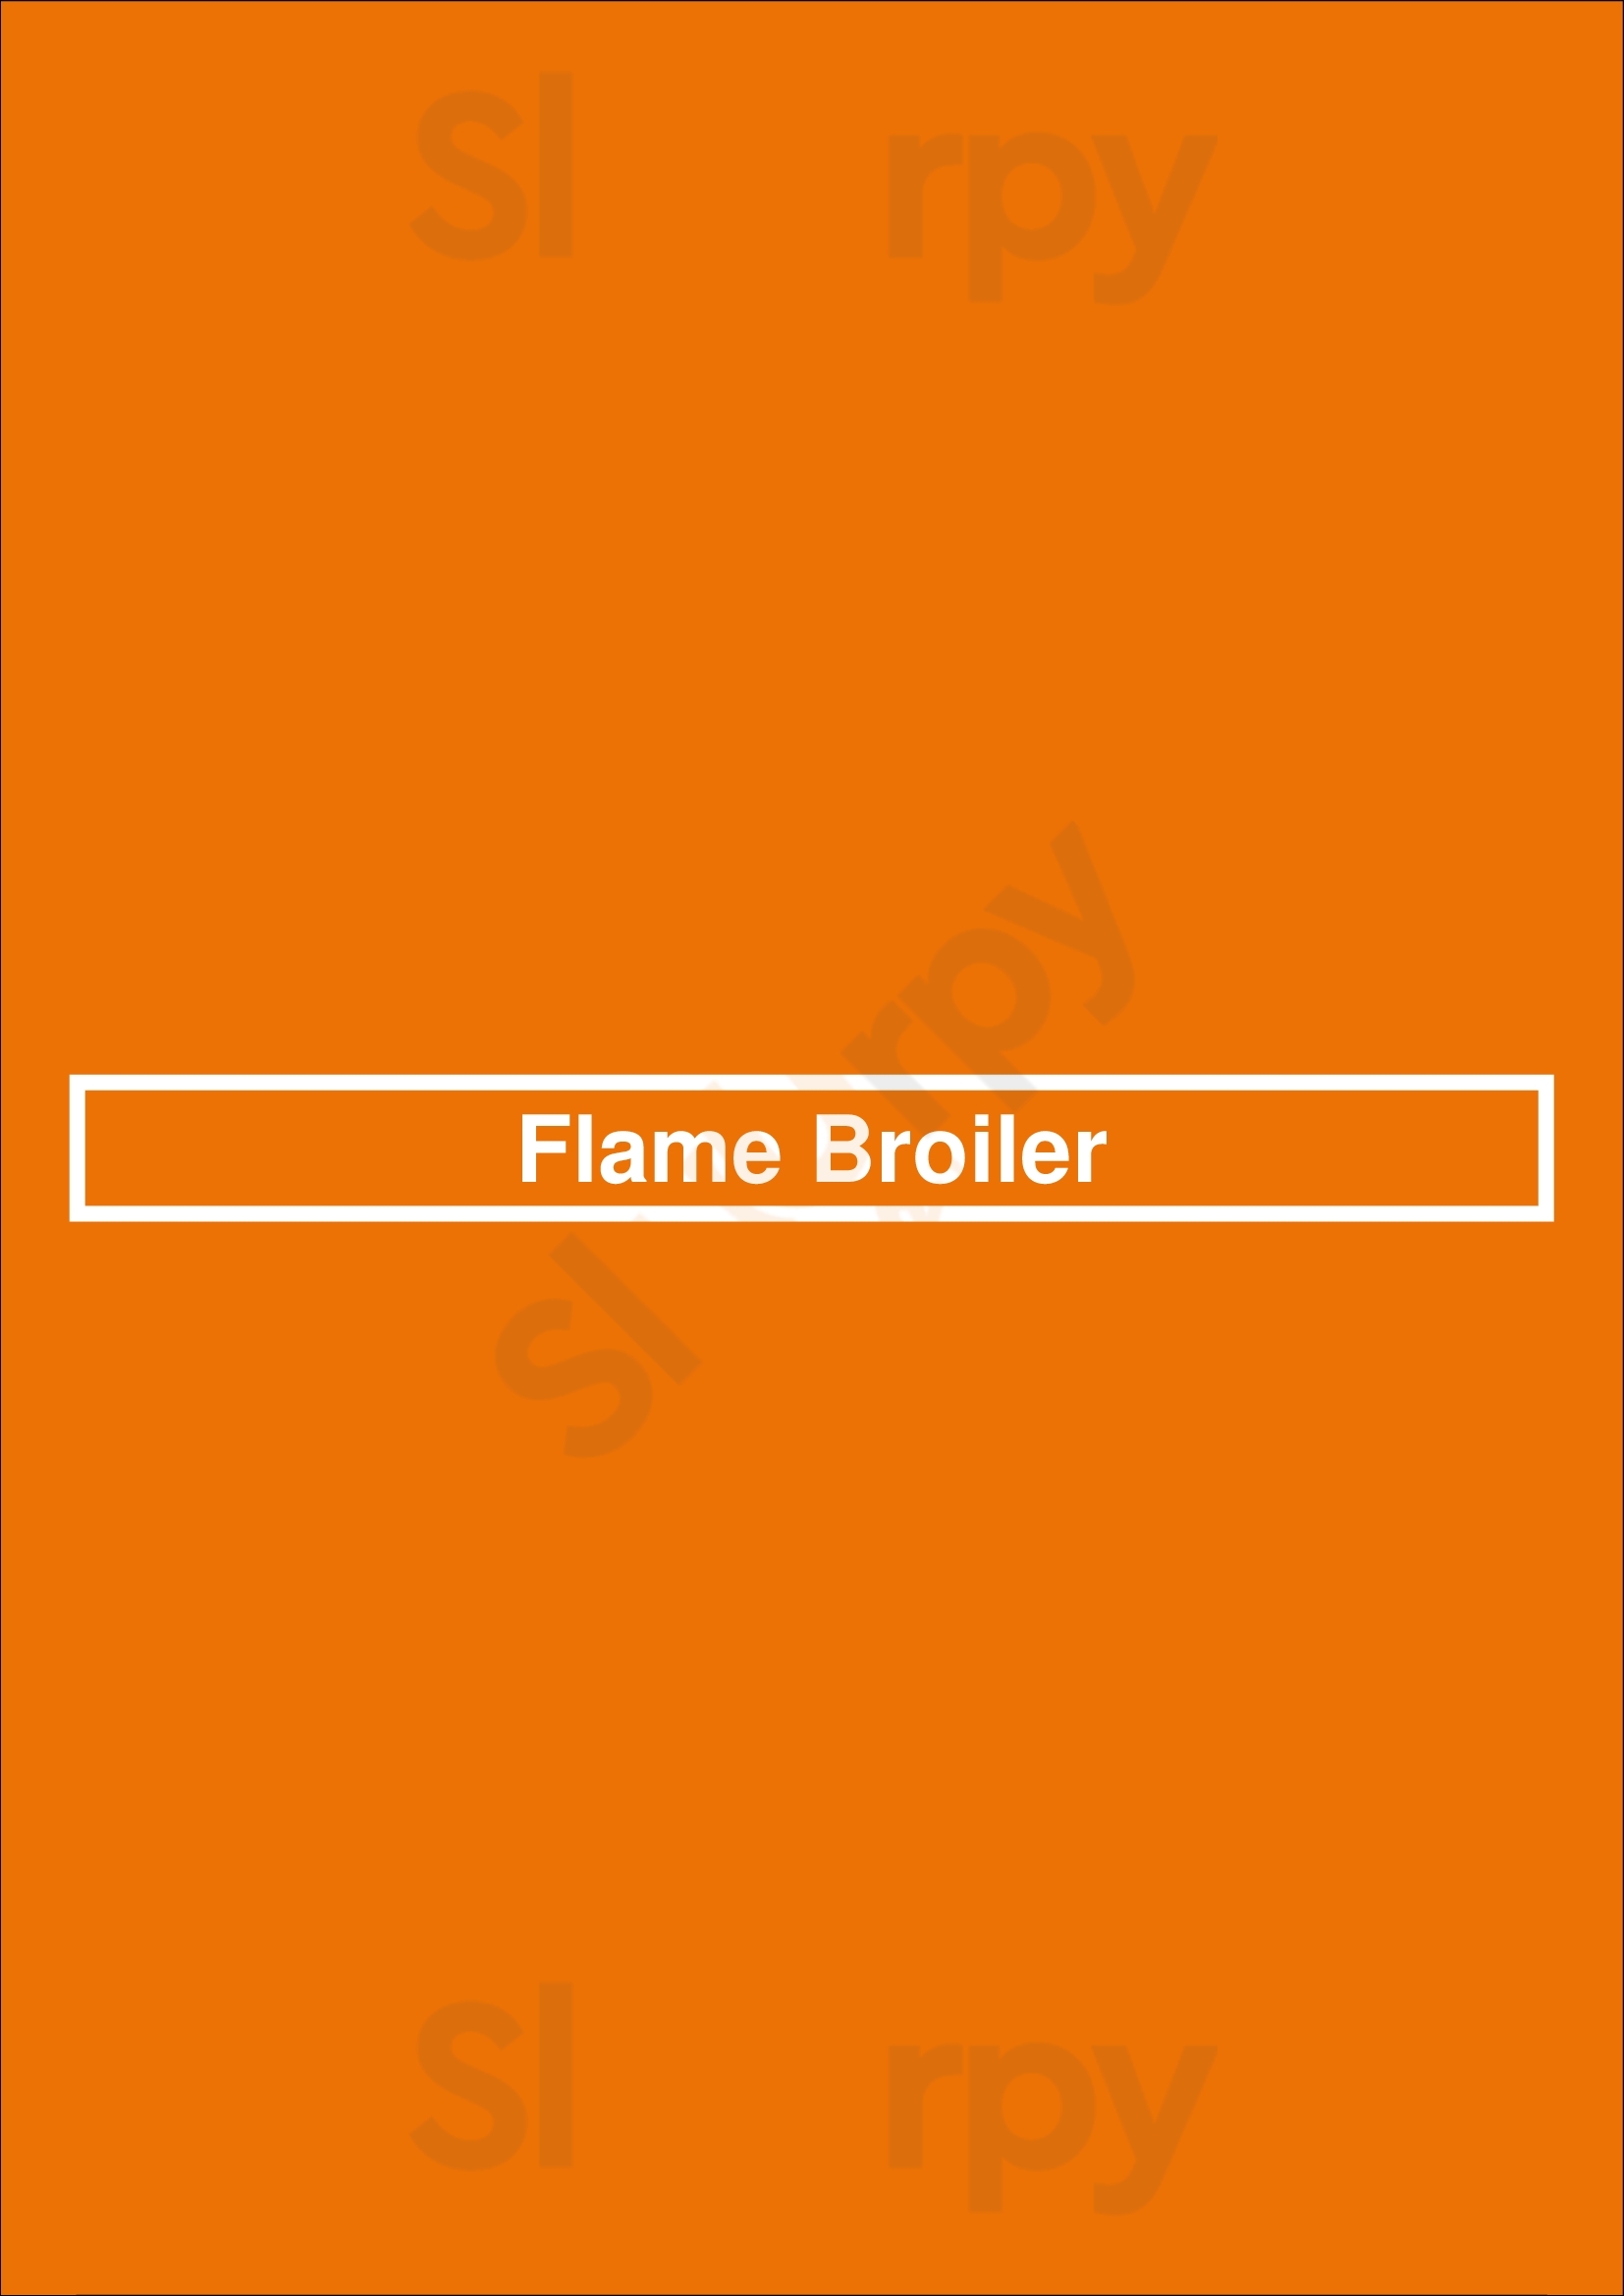 Flame Broiler Los Angeles Menu - 1